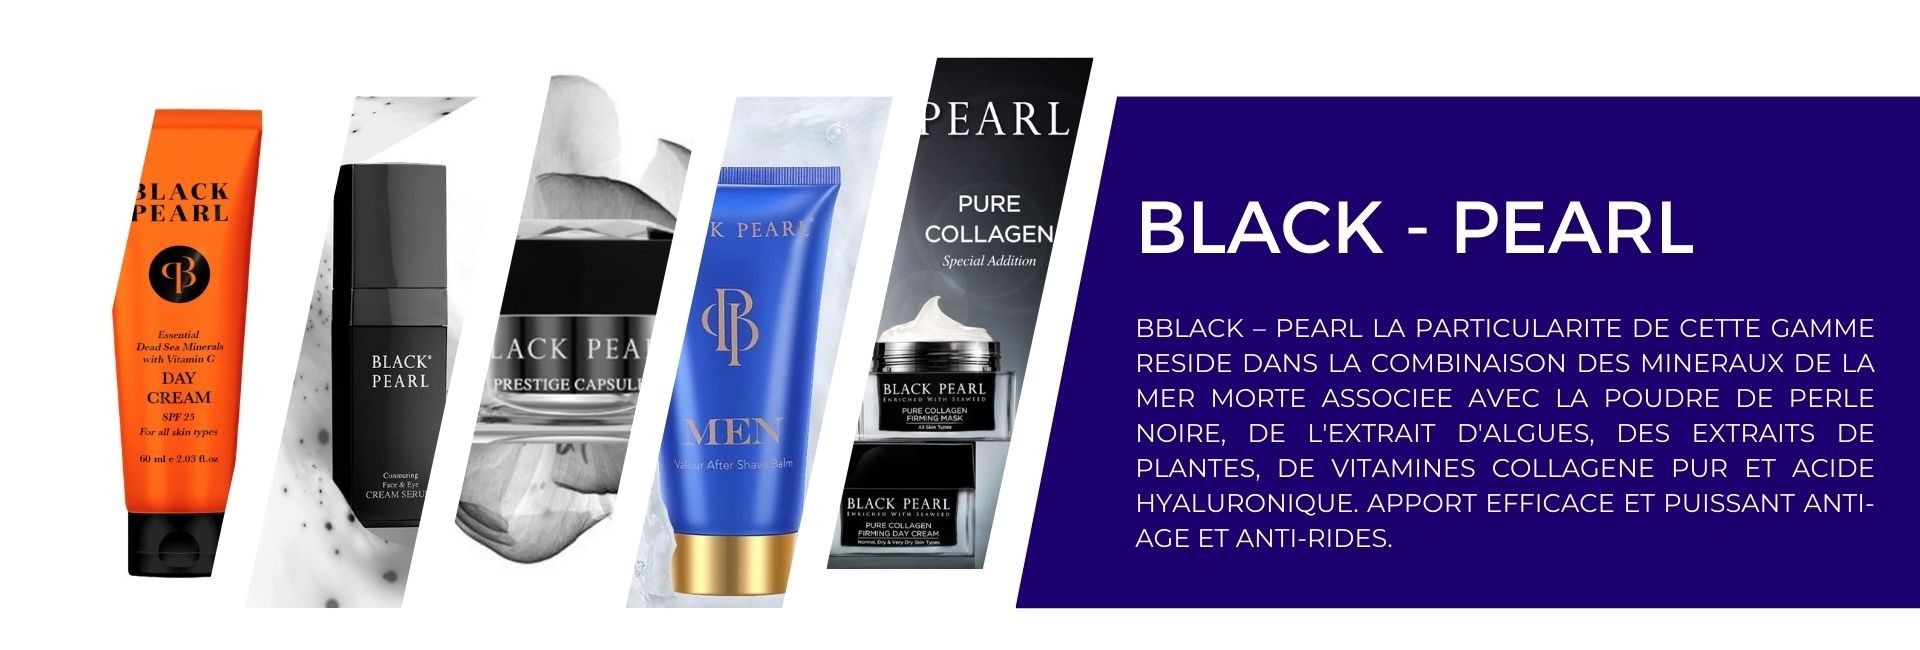 BLACK – PEARL La particularité de cette gamme  réside dans la combinaison des minéraux de la Mer Morte associée avec la Poudre de perle noire, de l'extrait d'algues, des extraits de plantes, de vitamines Collagène pur et acide hyaluronique